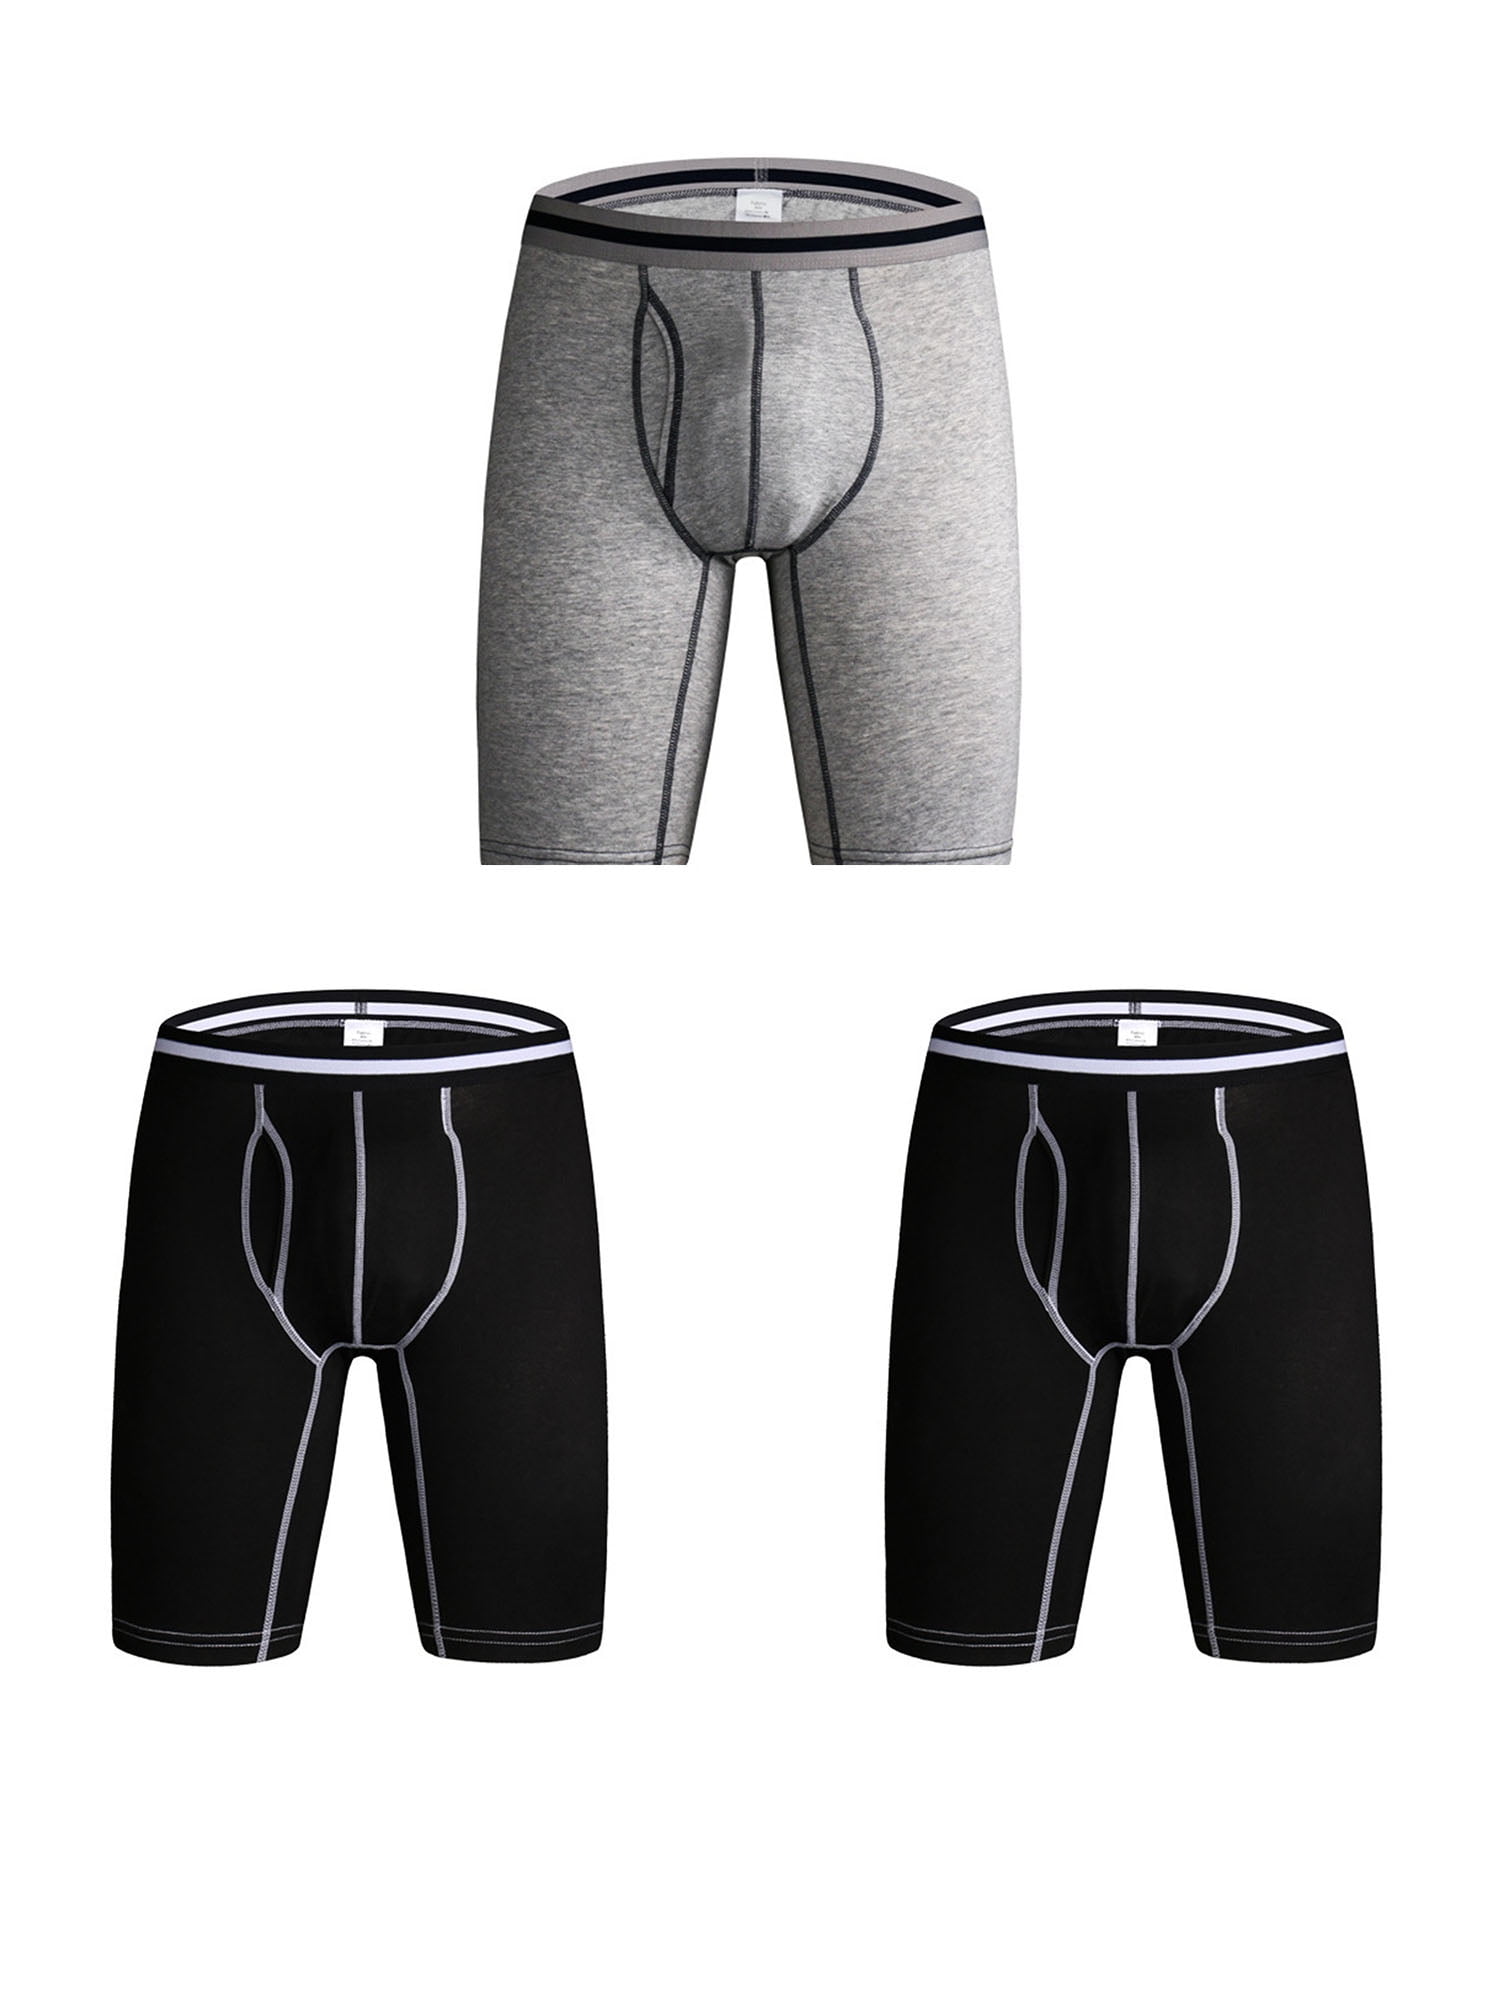 KEFITEVD Mens 4-Pack Underwear Stripe Cotton Boxer Briefs